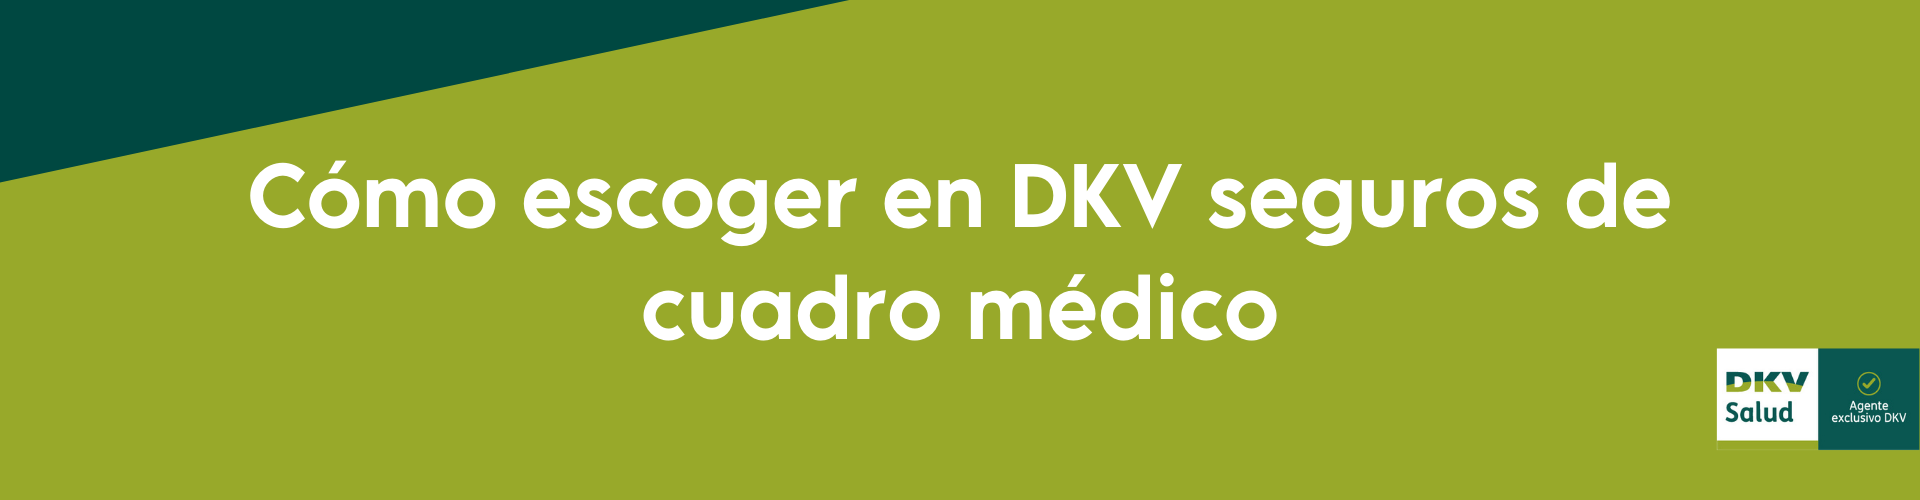 Criterios para escoger un seguro de cuadro médico en DKV